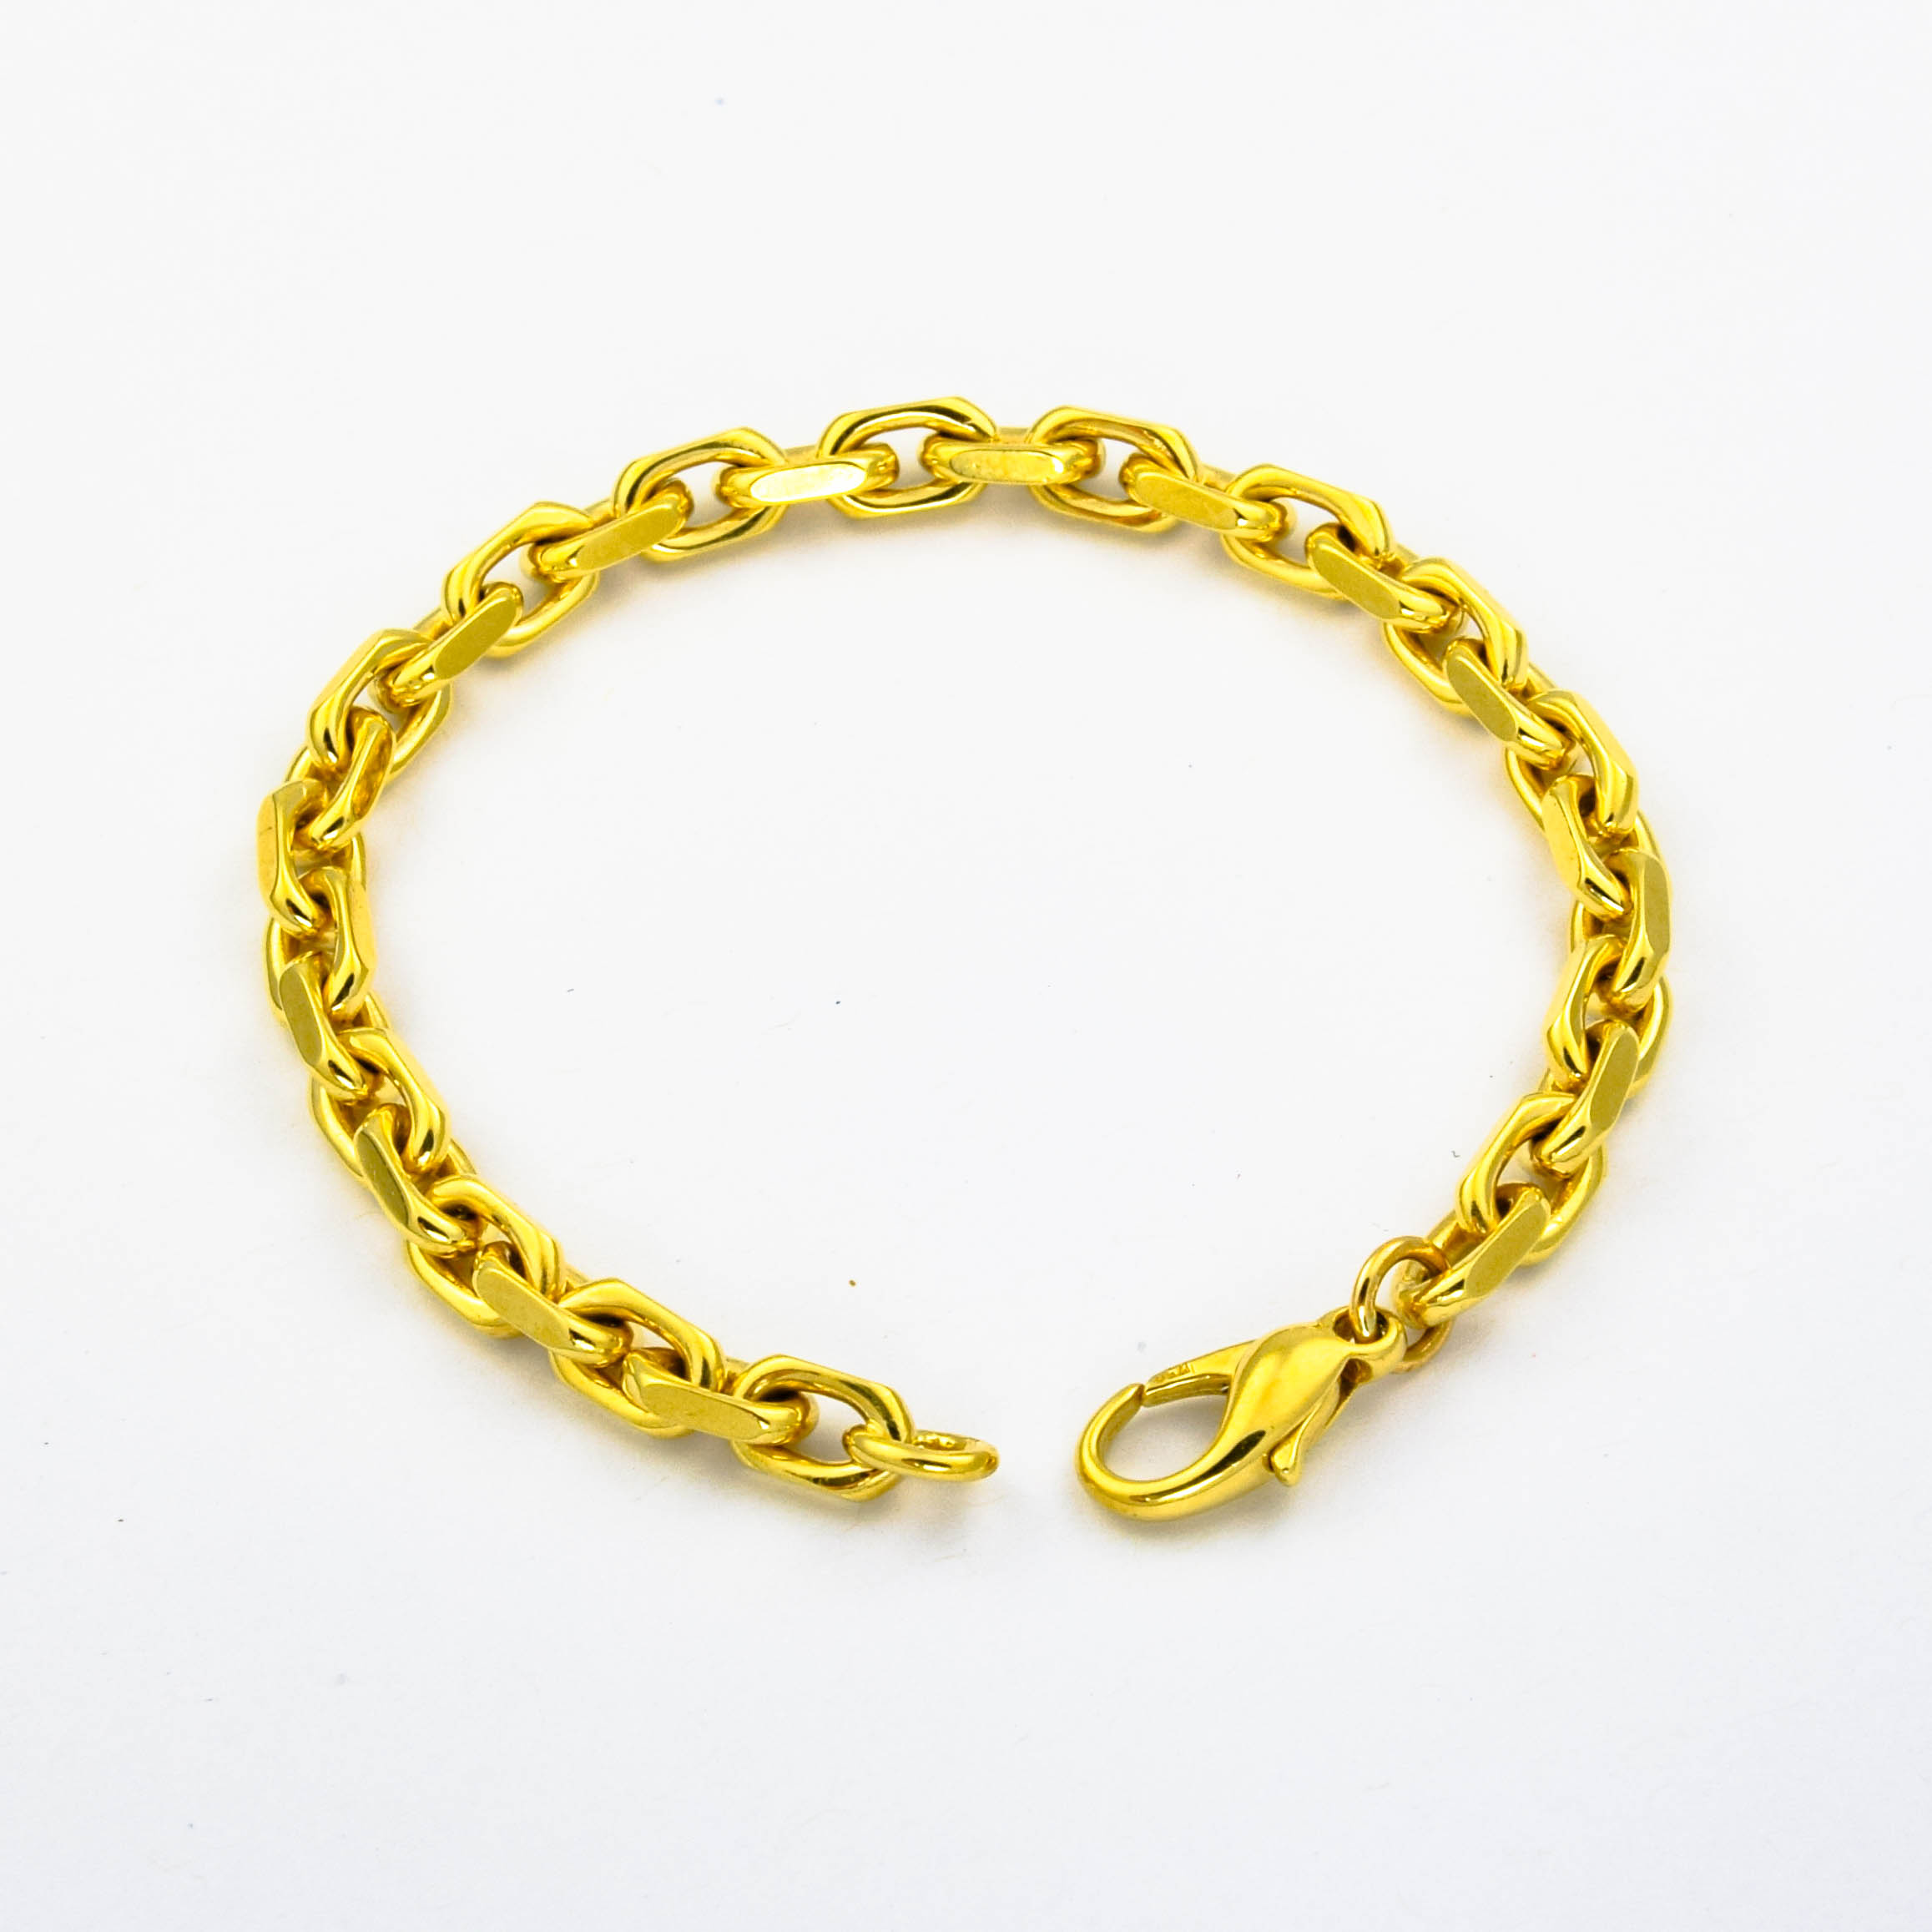 F. Binder Armband aus 750 Gelbgold, nachhaltiger second hand Schmuck perfekt aufgearbeitet